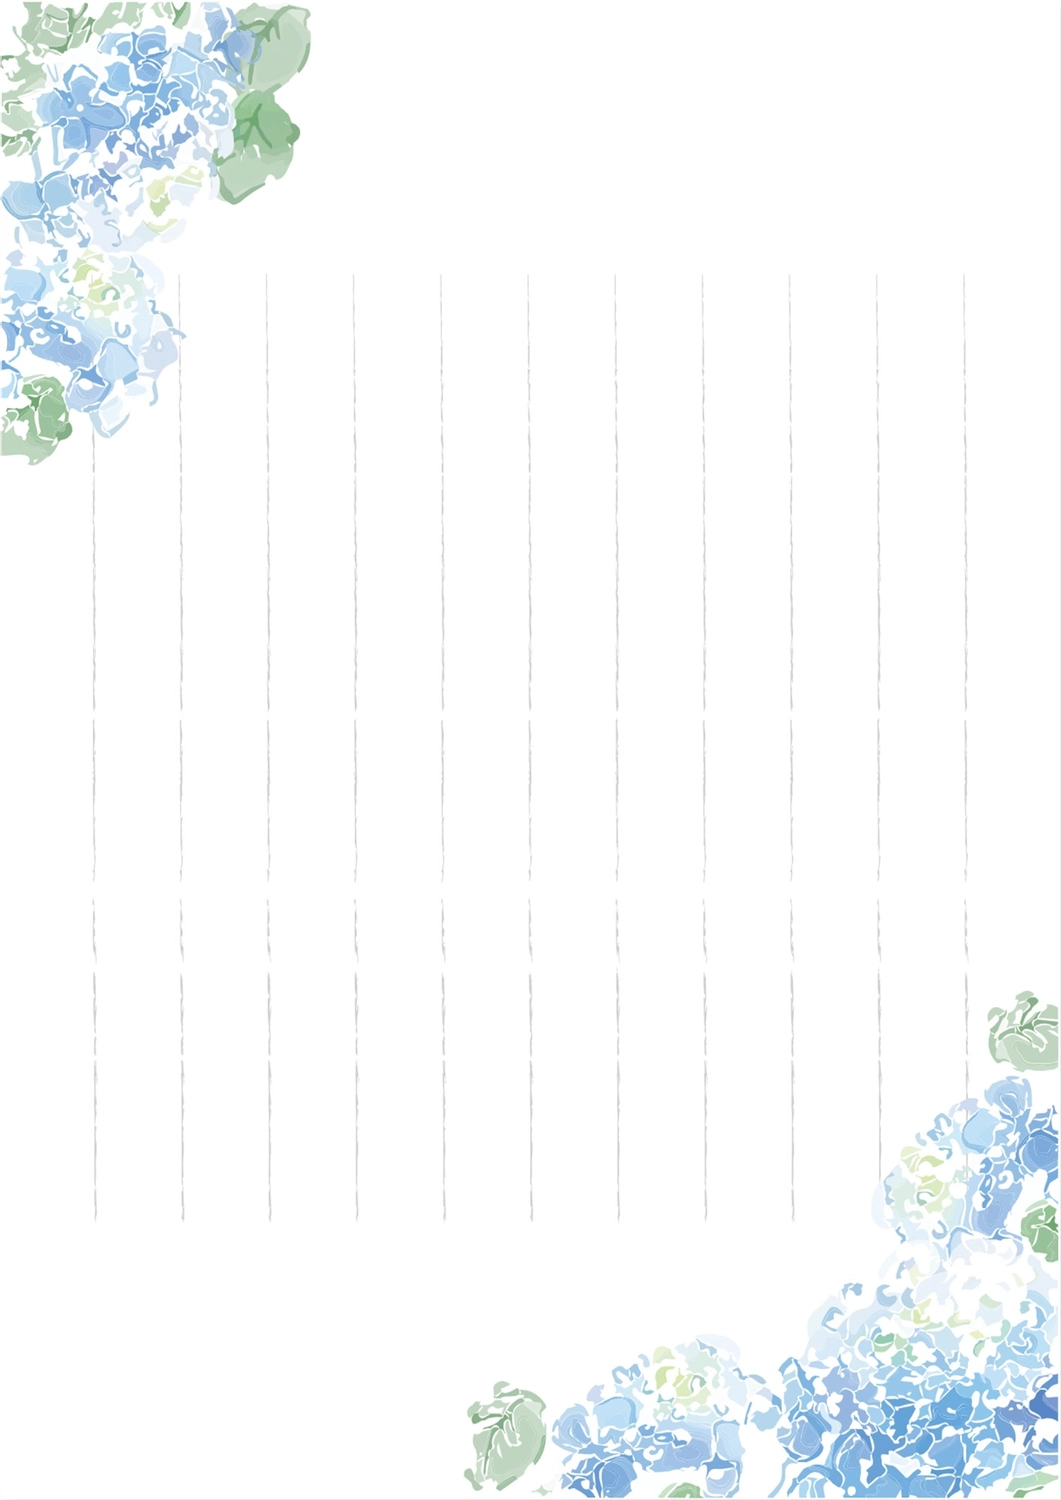 青の花の飾り枠便箋, 만들기, 편집, 디자인, 편지지 템플릿